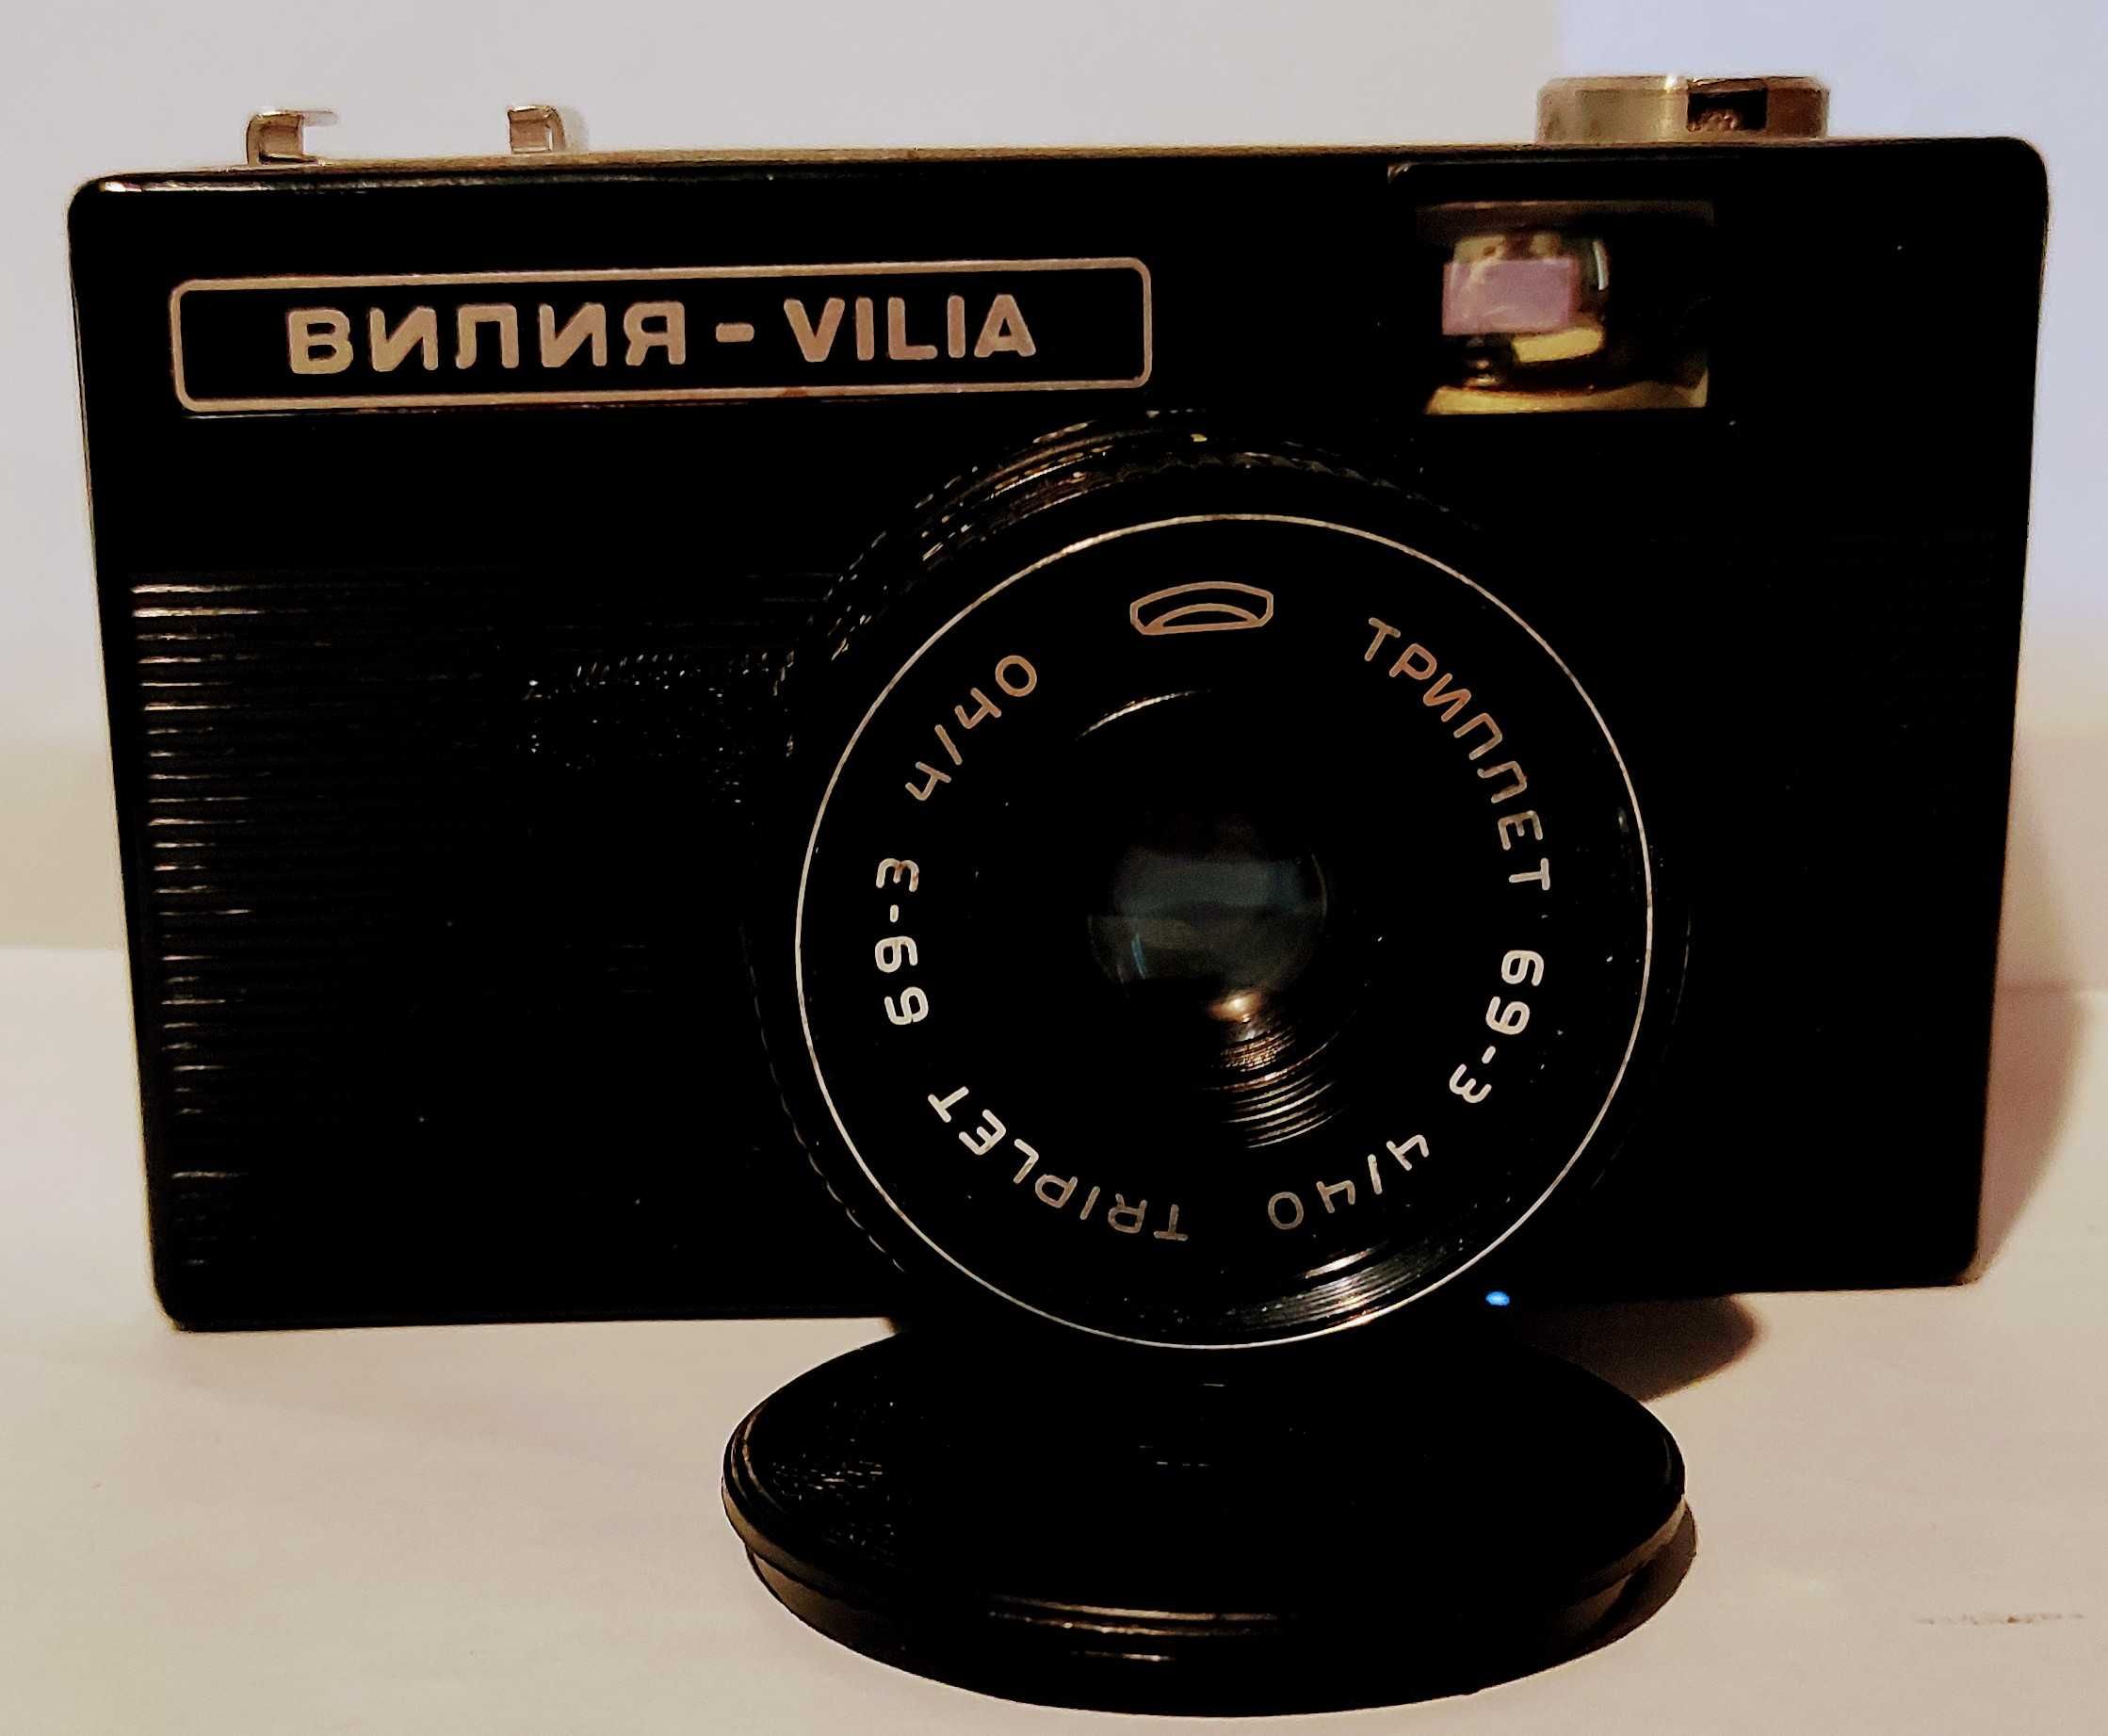 stare aparaty fotograficzne + gadżety